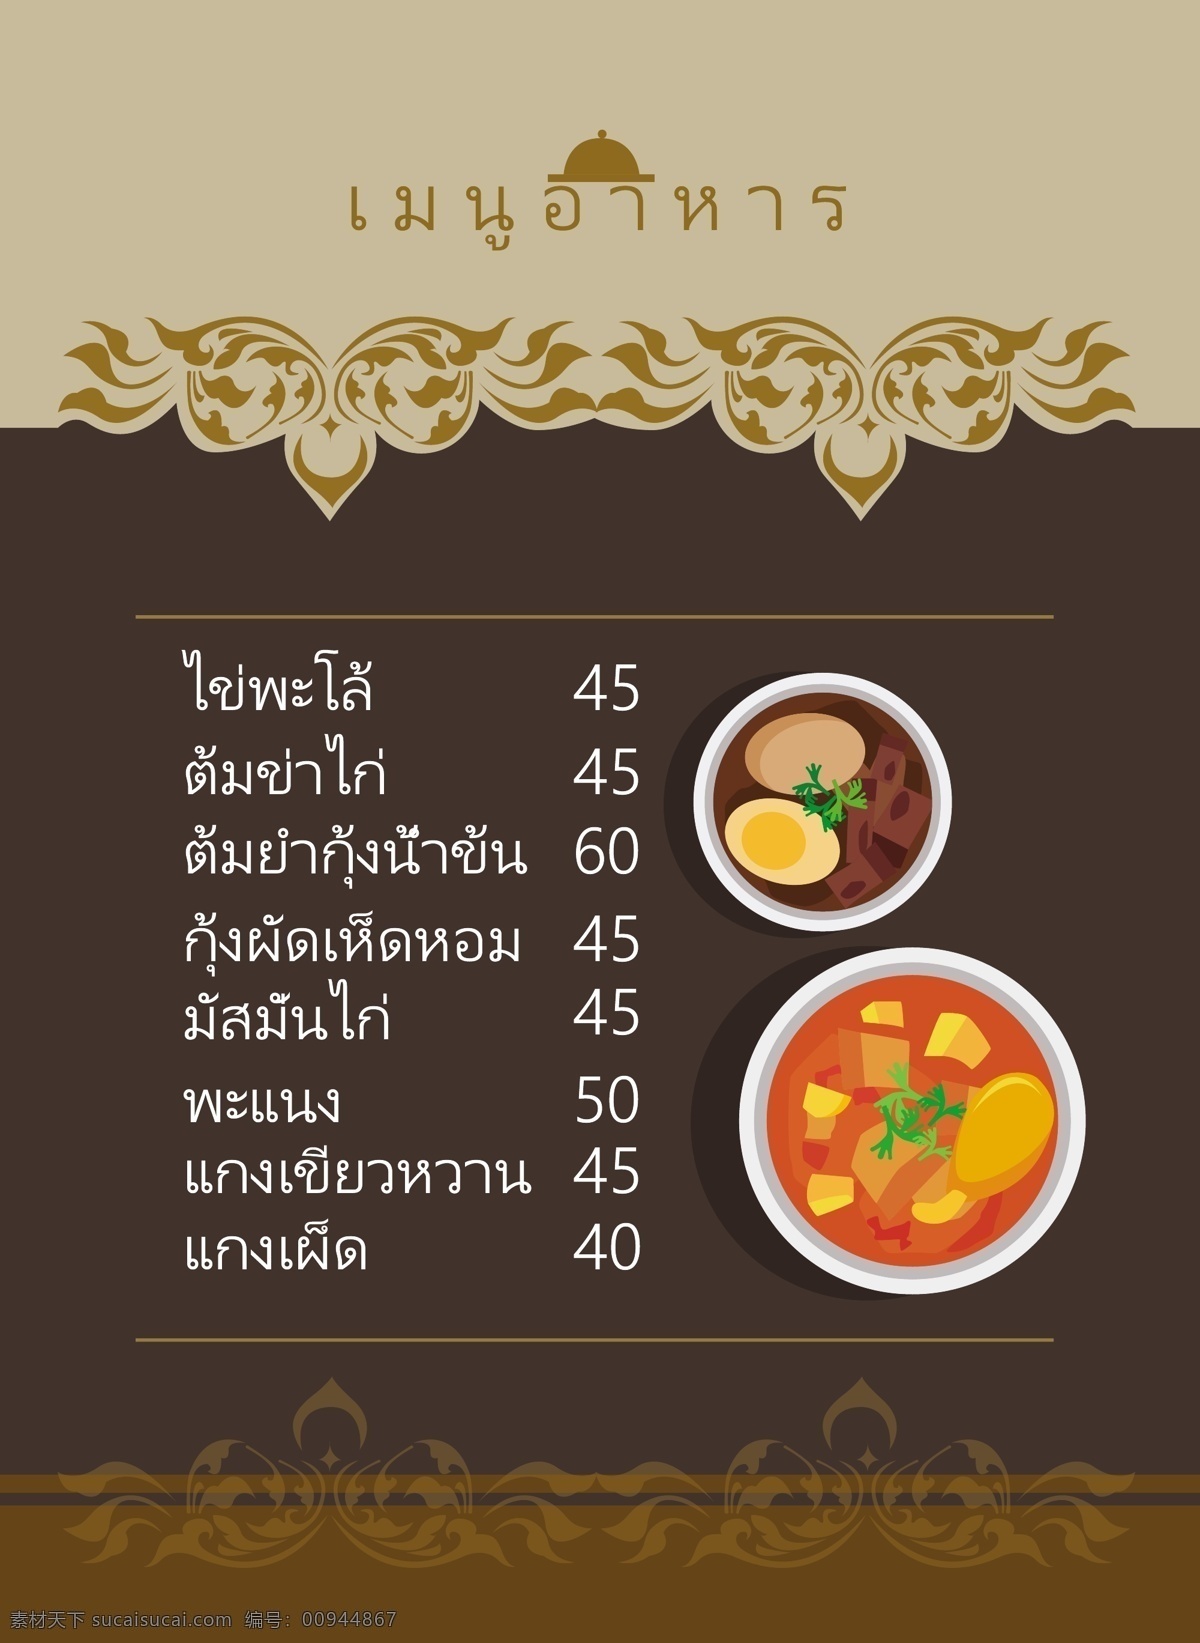 颜色为棕色 泰国 列表菜单 餐饮